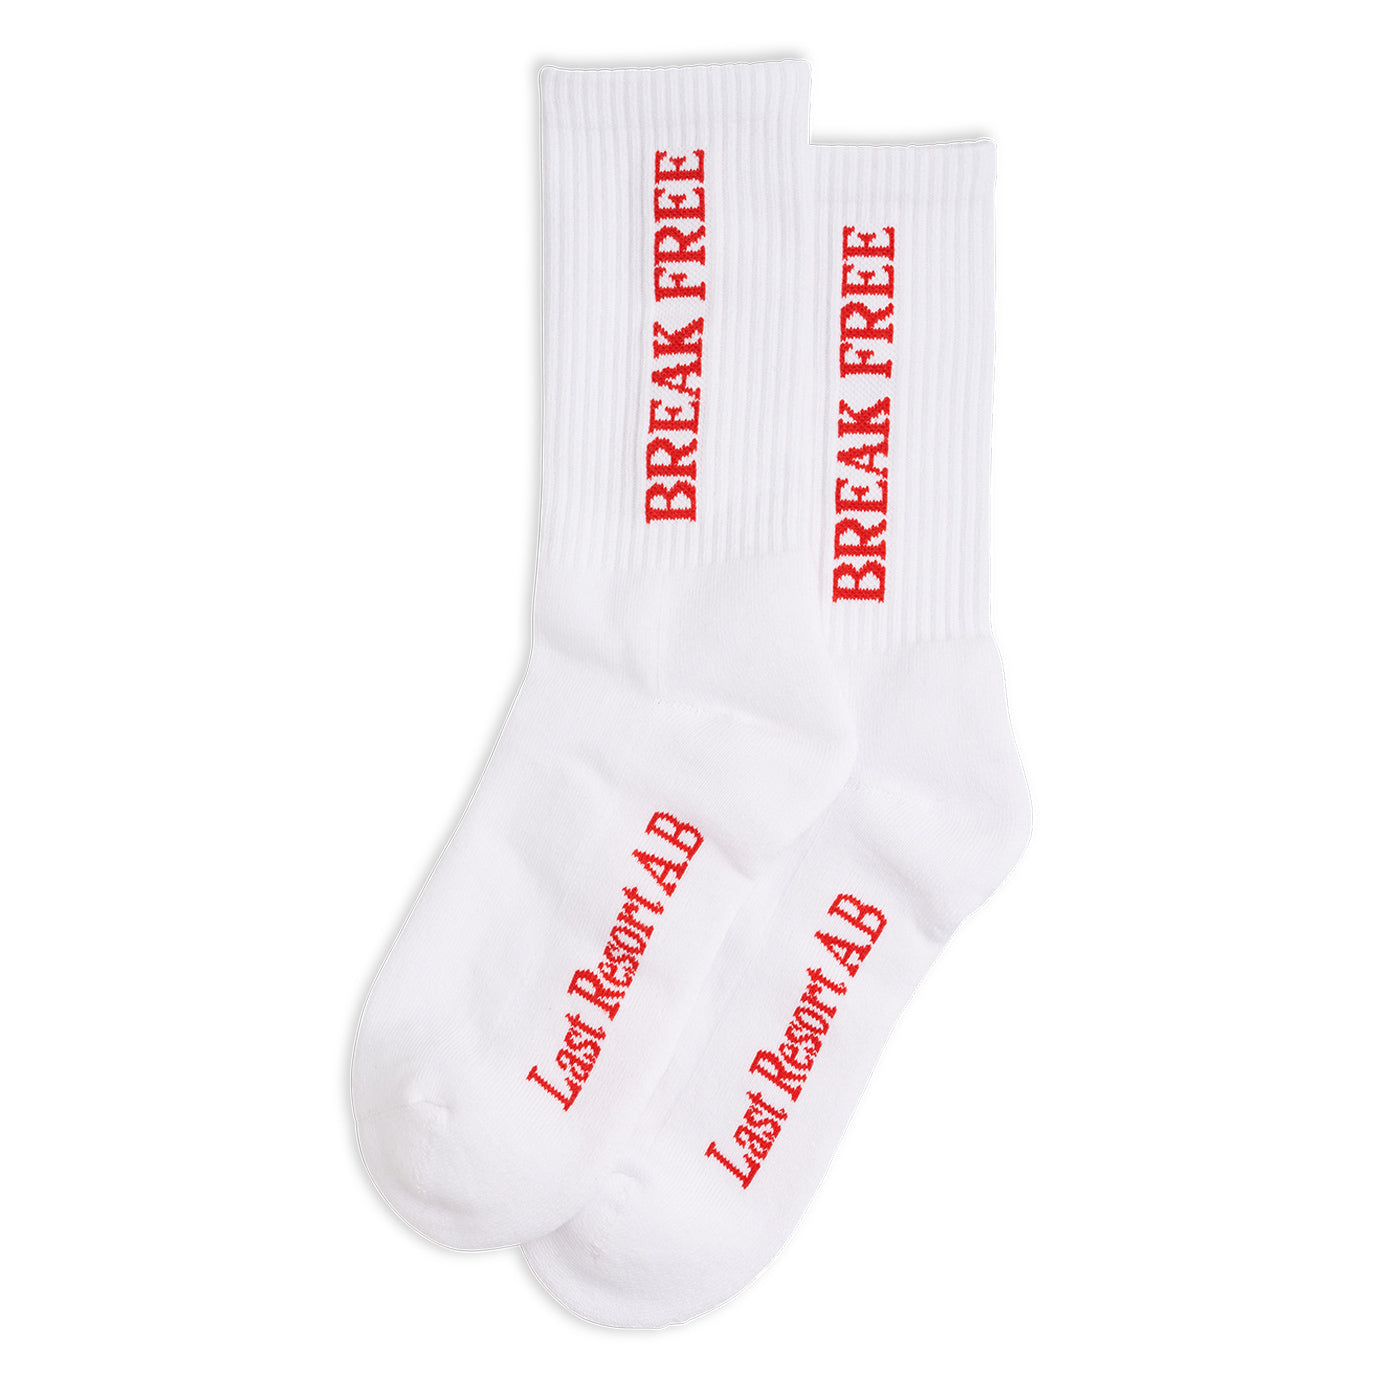 Break Free Socks - White